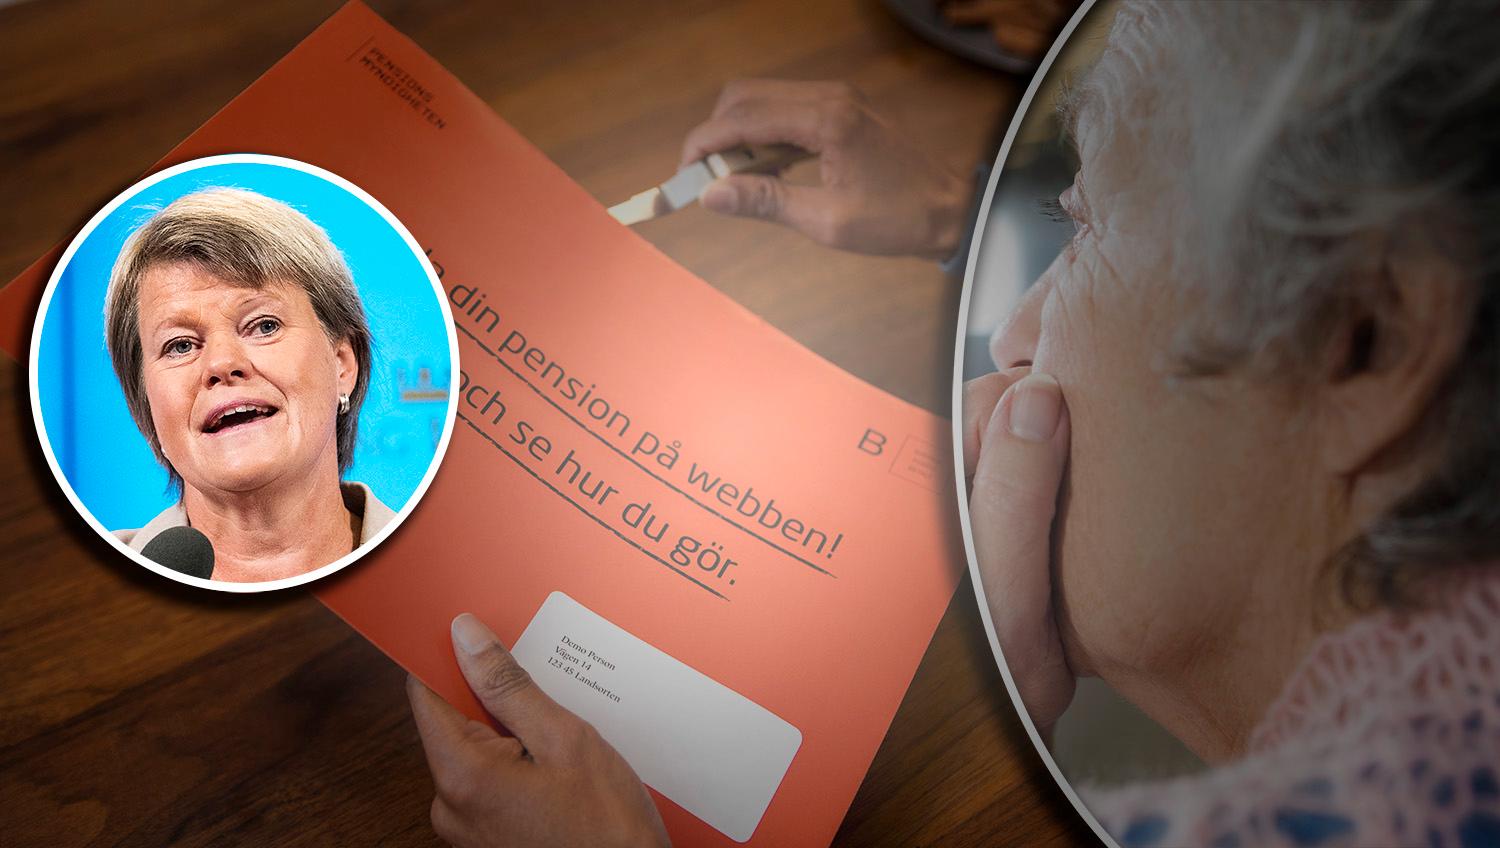 Många kvinnor oroar sig när det orangea kuvertet dimper ner i lådan. Nu behöver Sverige göra om pensionssystemet, skriver debattören.